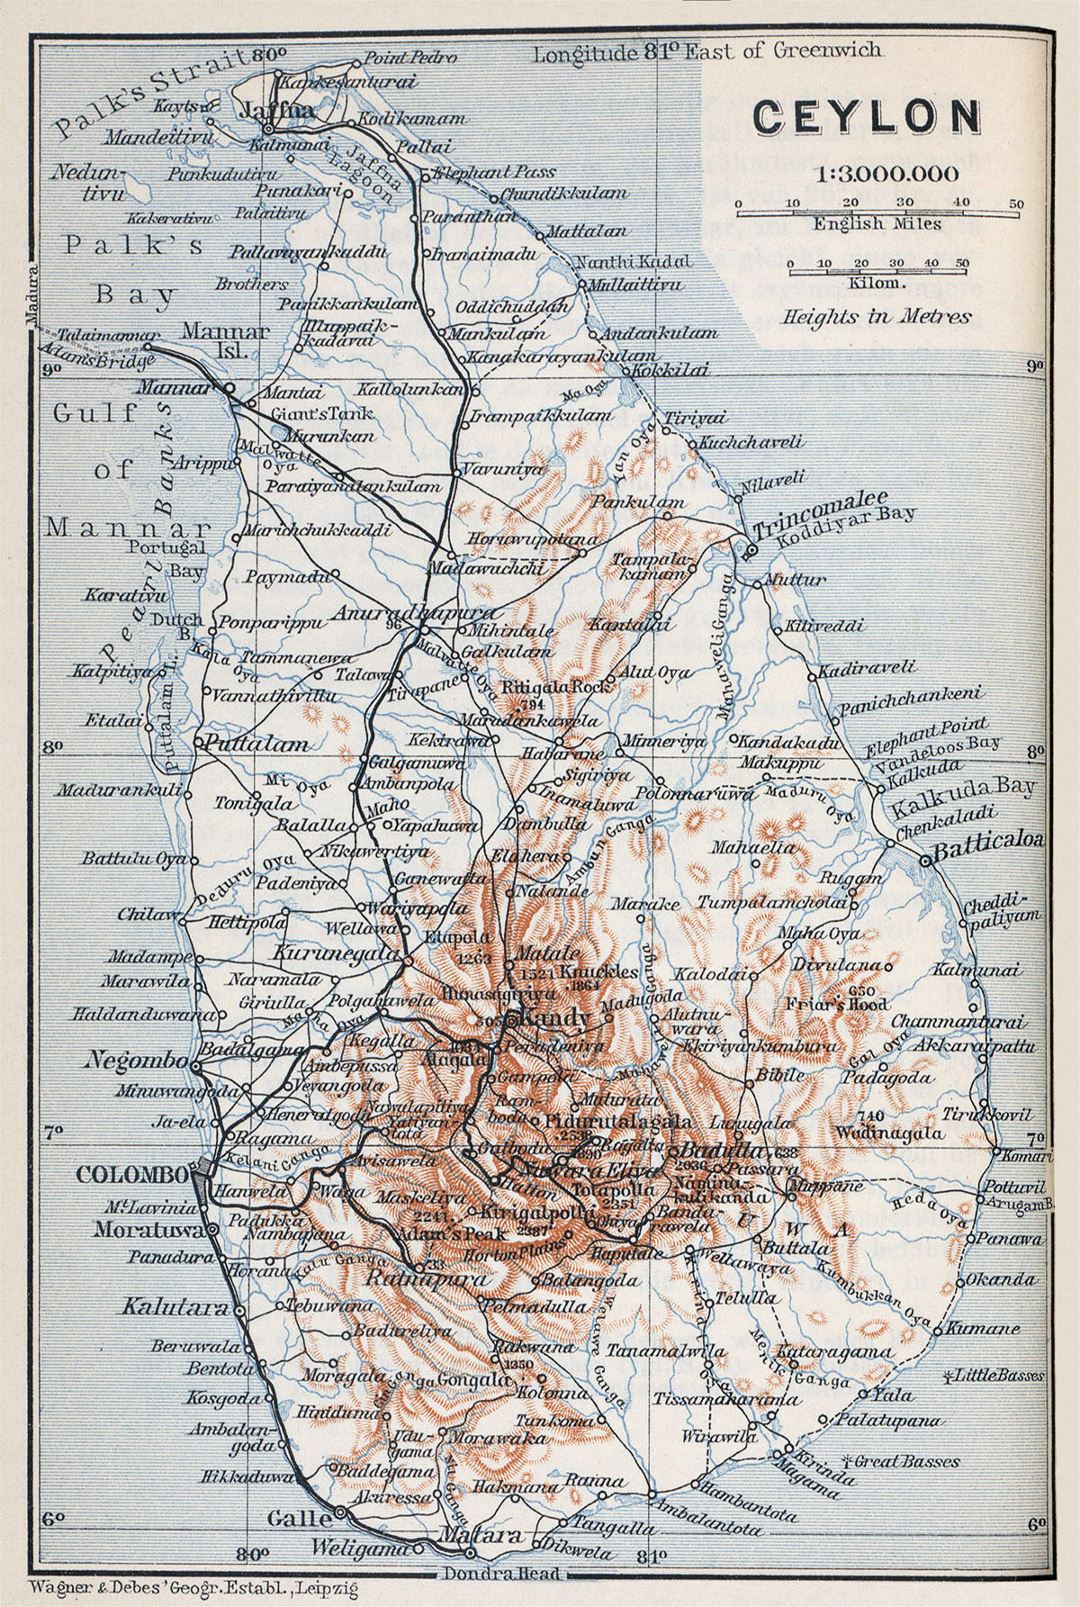 Grande mapa antiguo de Sri Lanka con carreteras, ciudades y relieve - 1914